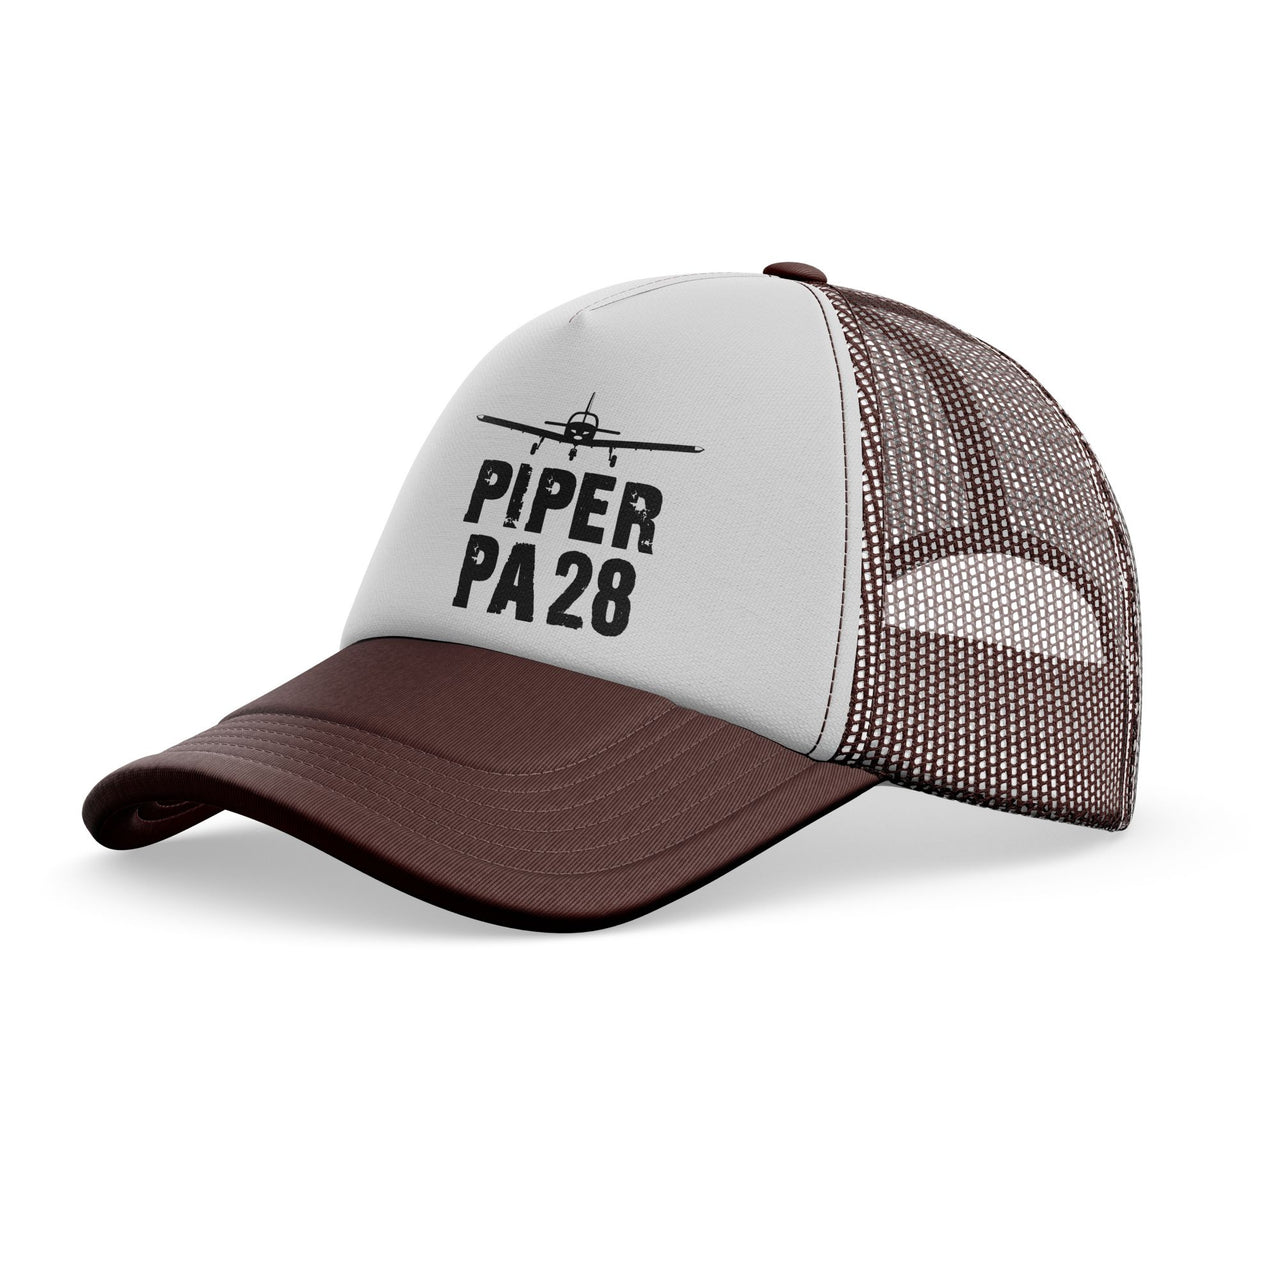 Piper PA28 & Plane Designed Trucker Caps & Hats